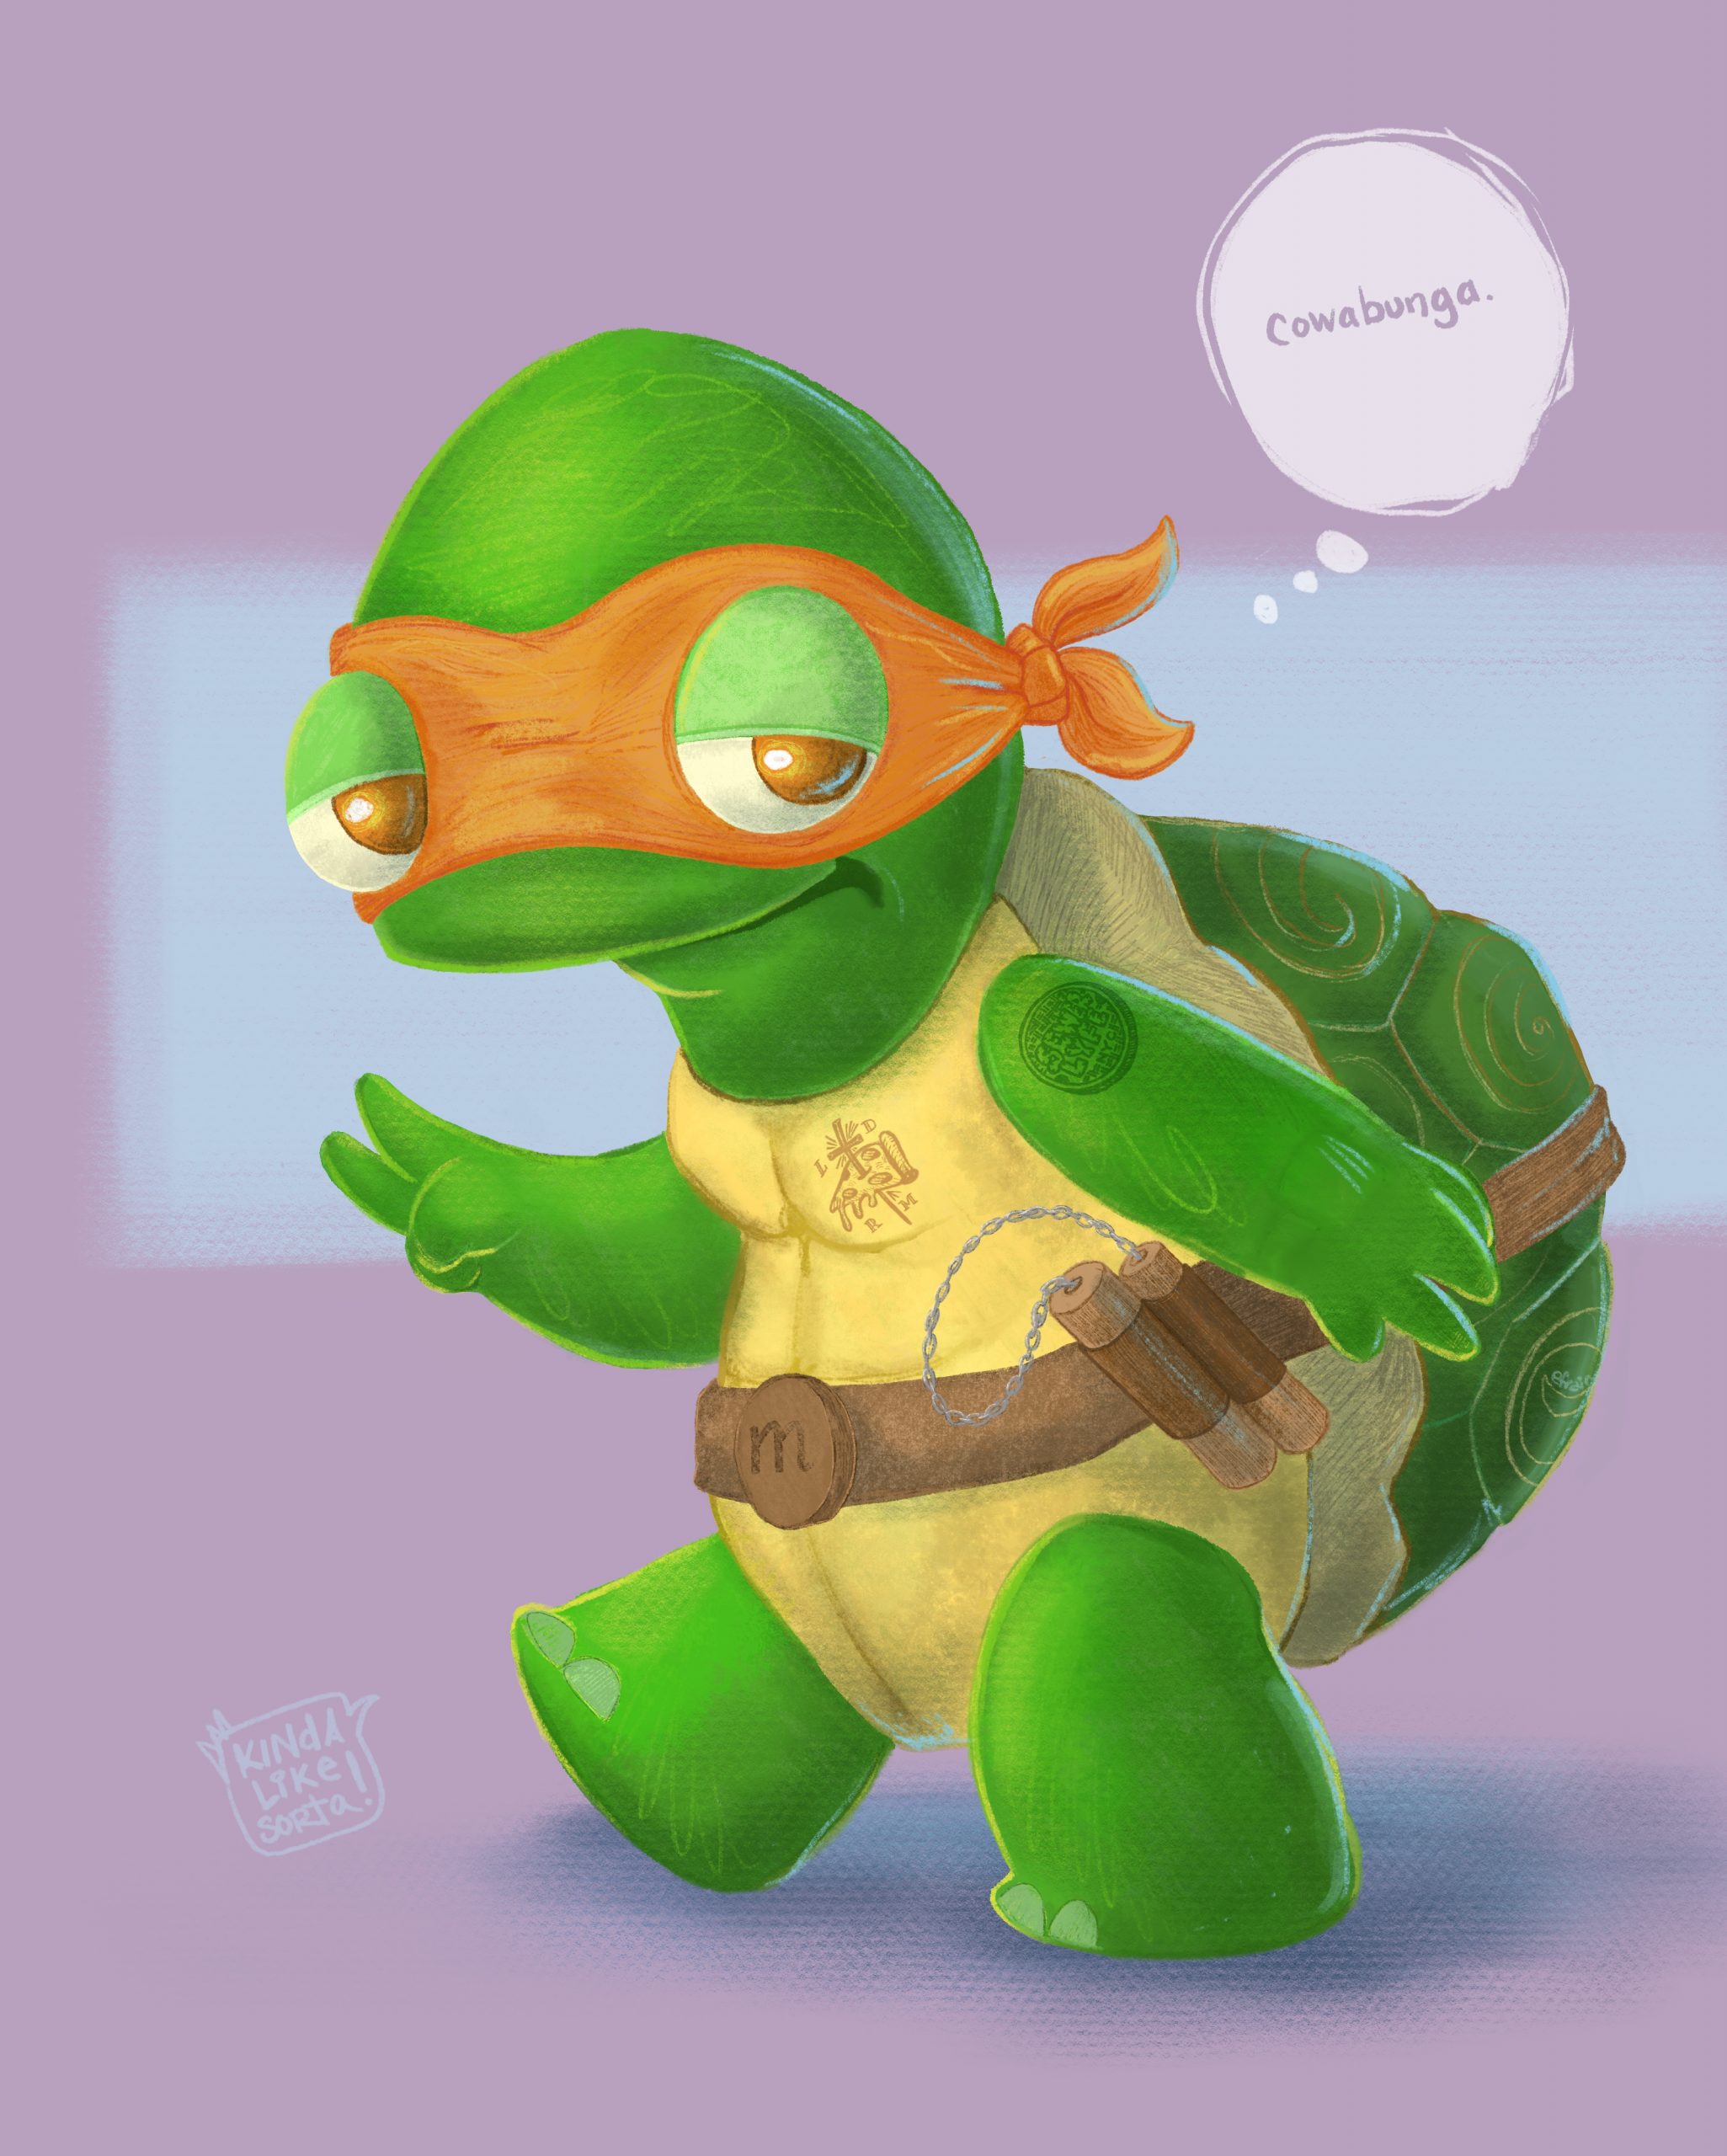 Michelangelo the Ninja Turtle saying "cowabunga"